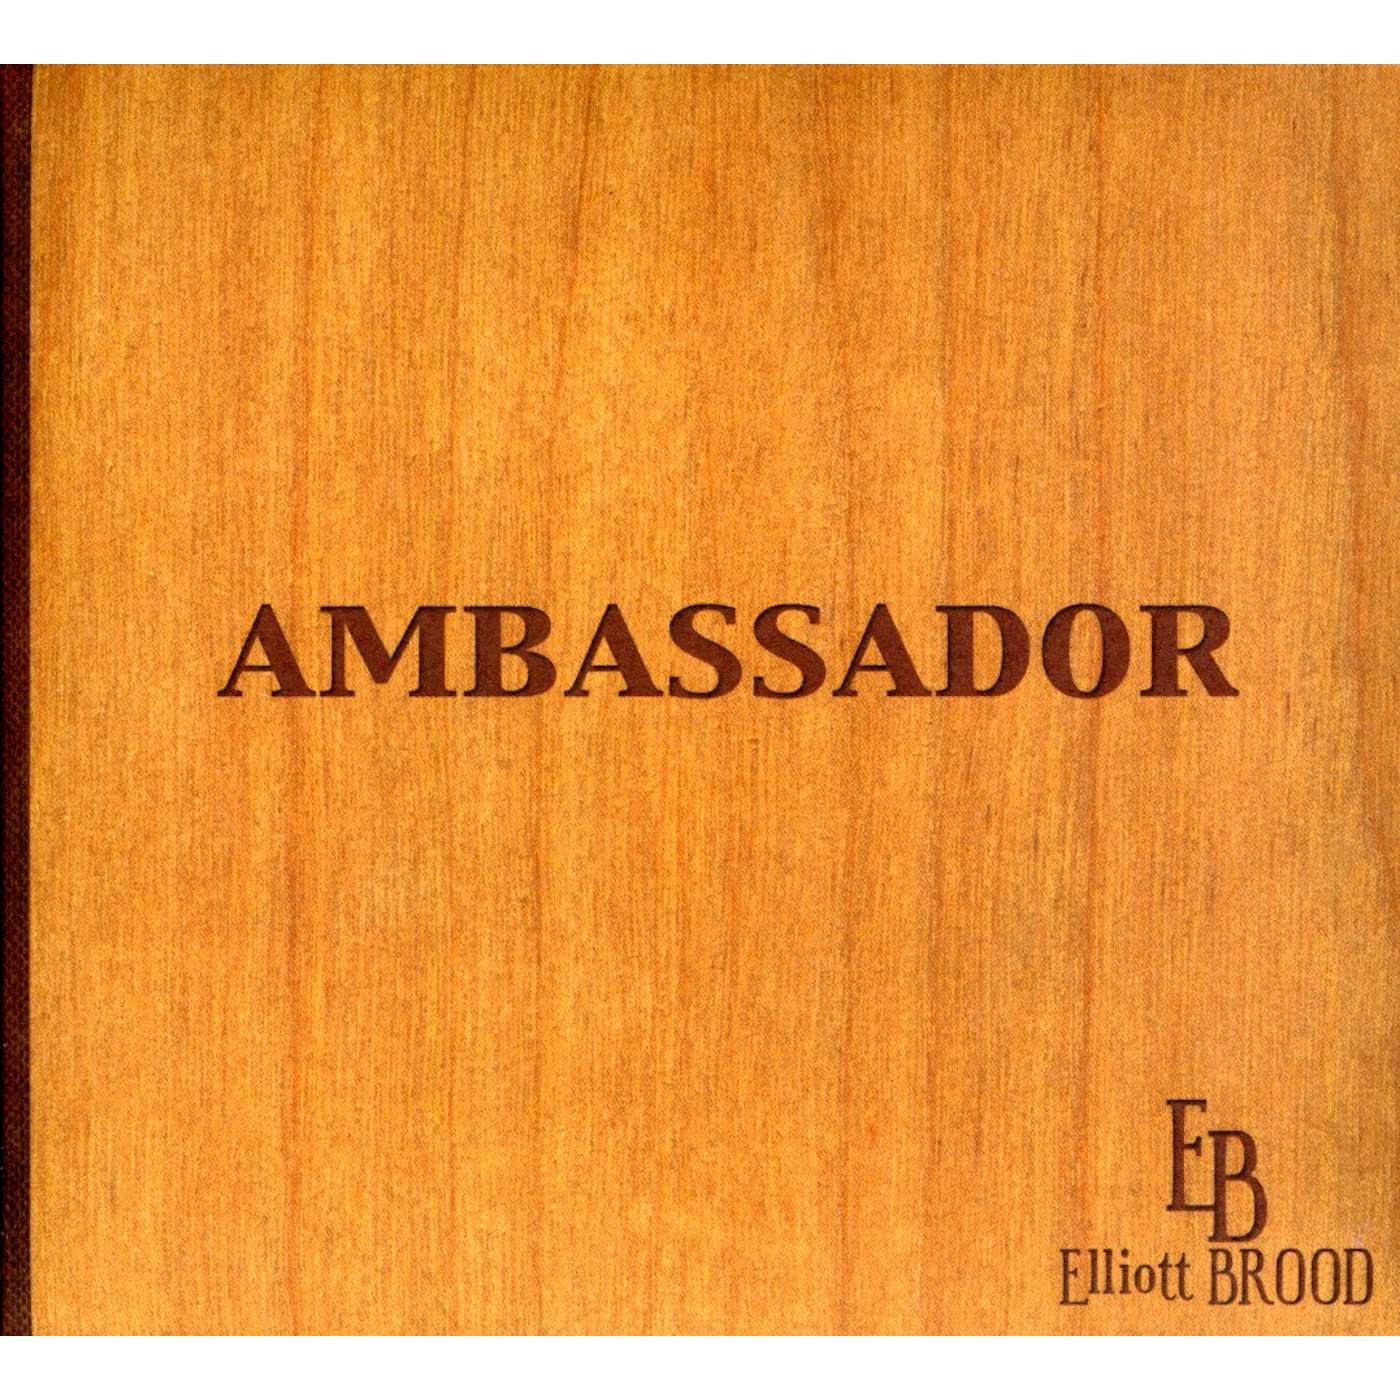 Elliott BROOD AMBASSADOR CD